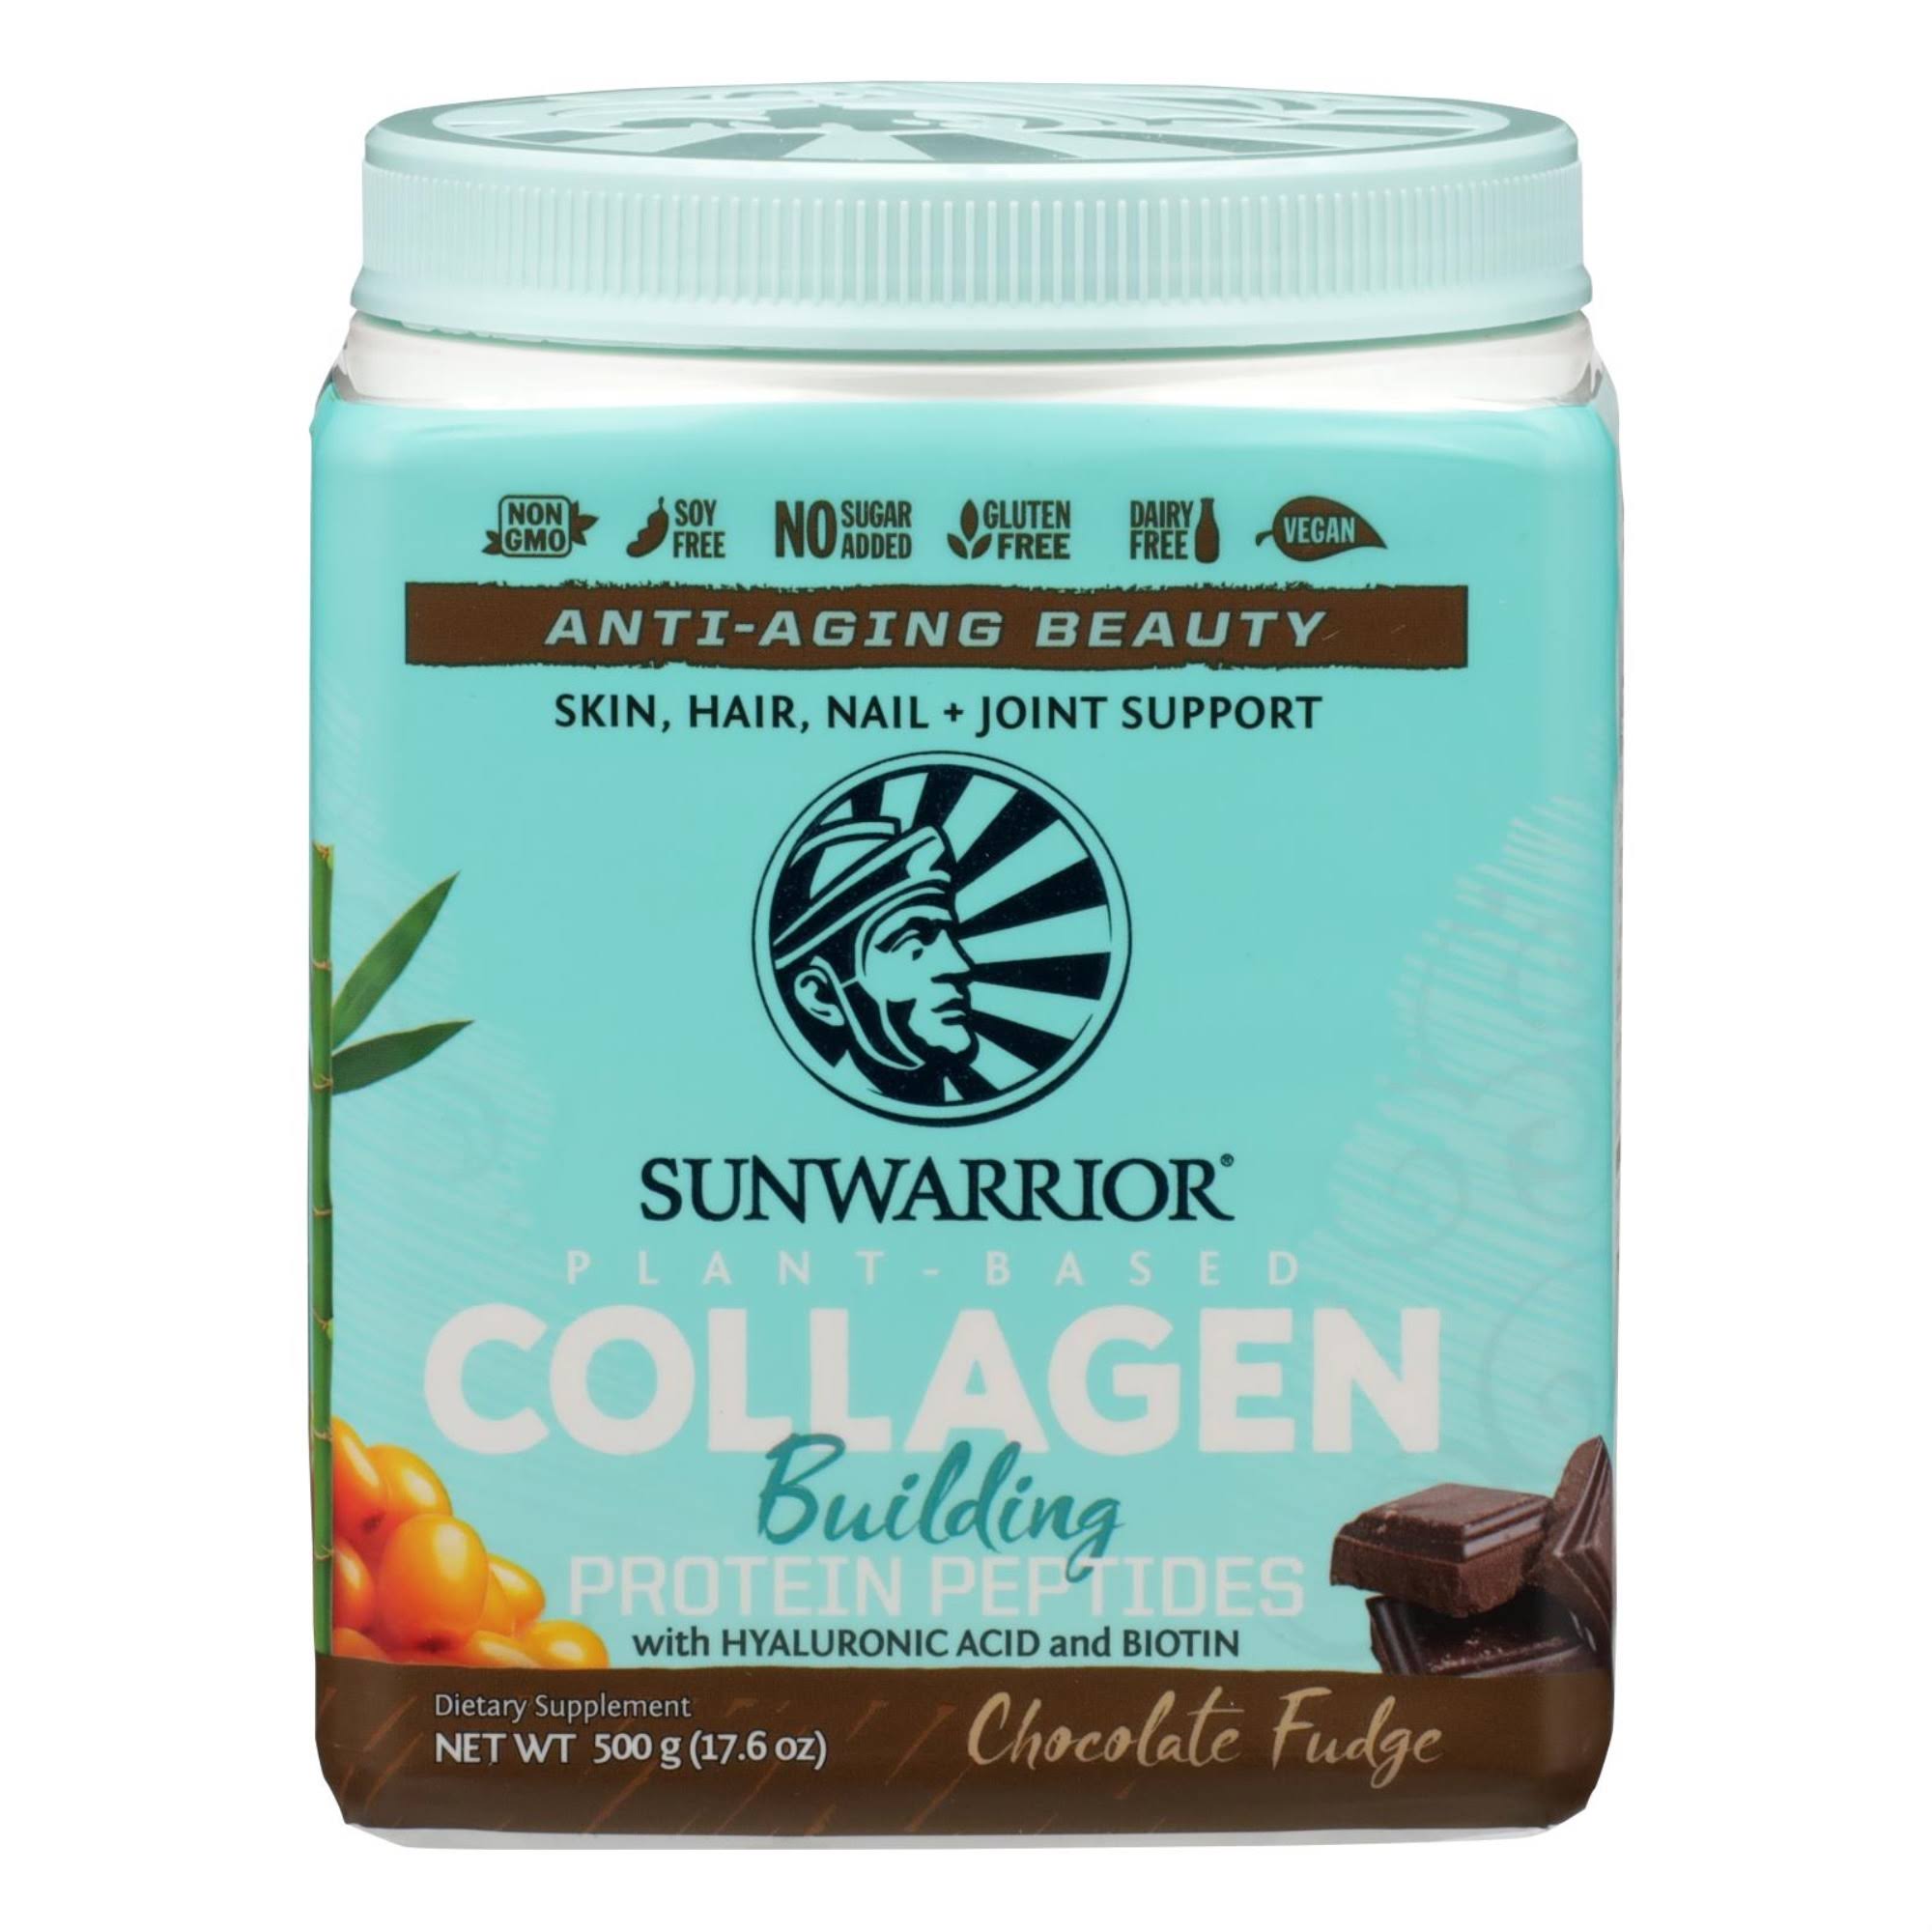 Sunwarrior Collagen Building Protein Peptides, Chocolate Fudge 17.6 oz